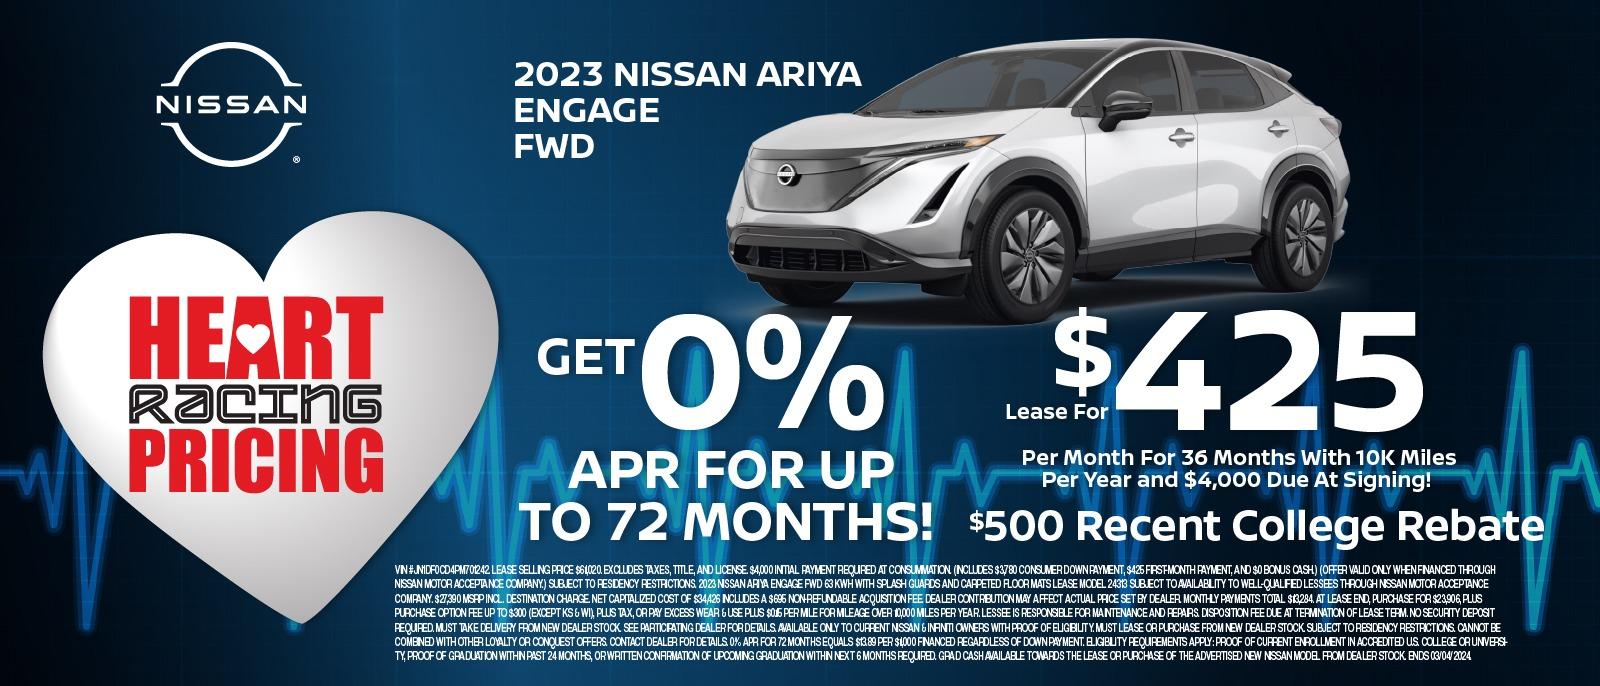 2023 Nissan Ariya Engage FWD